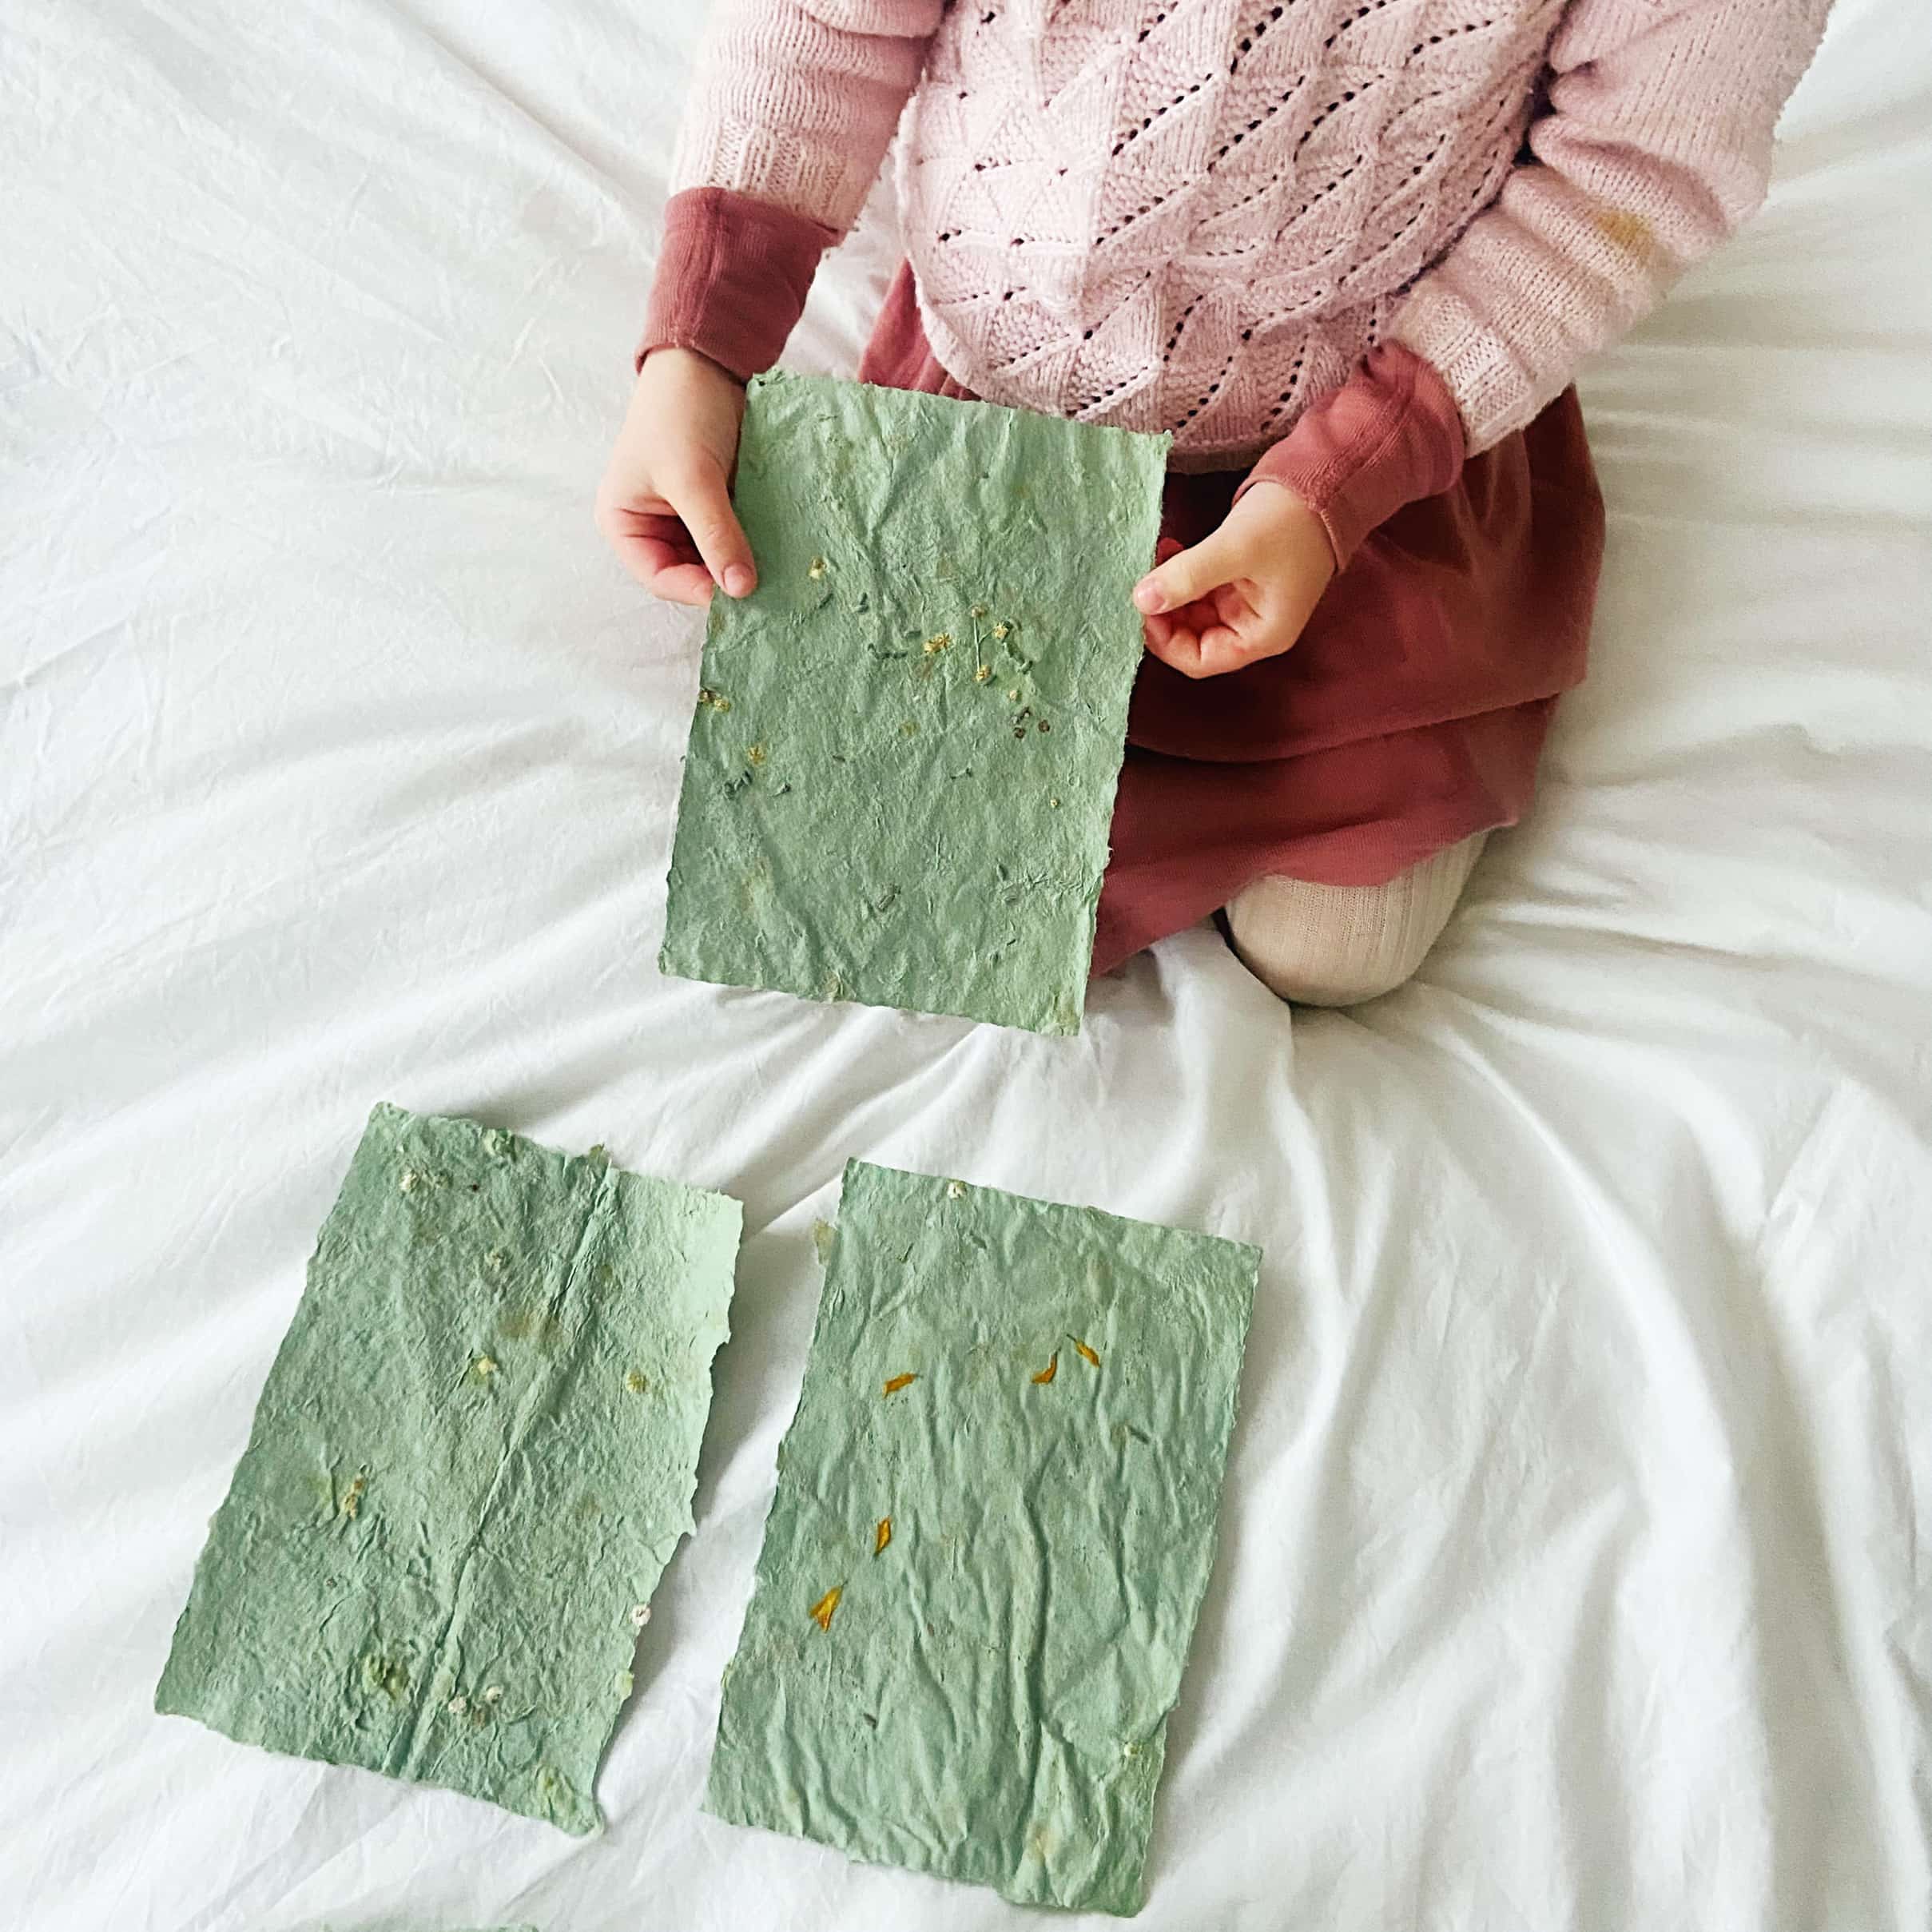 Verblinding Aanpassing ziel Zelf papier maken van oud papier met kinderen